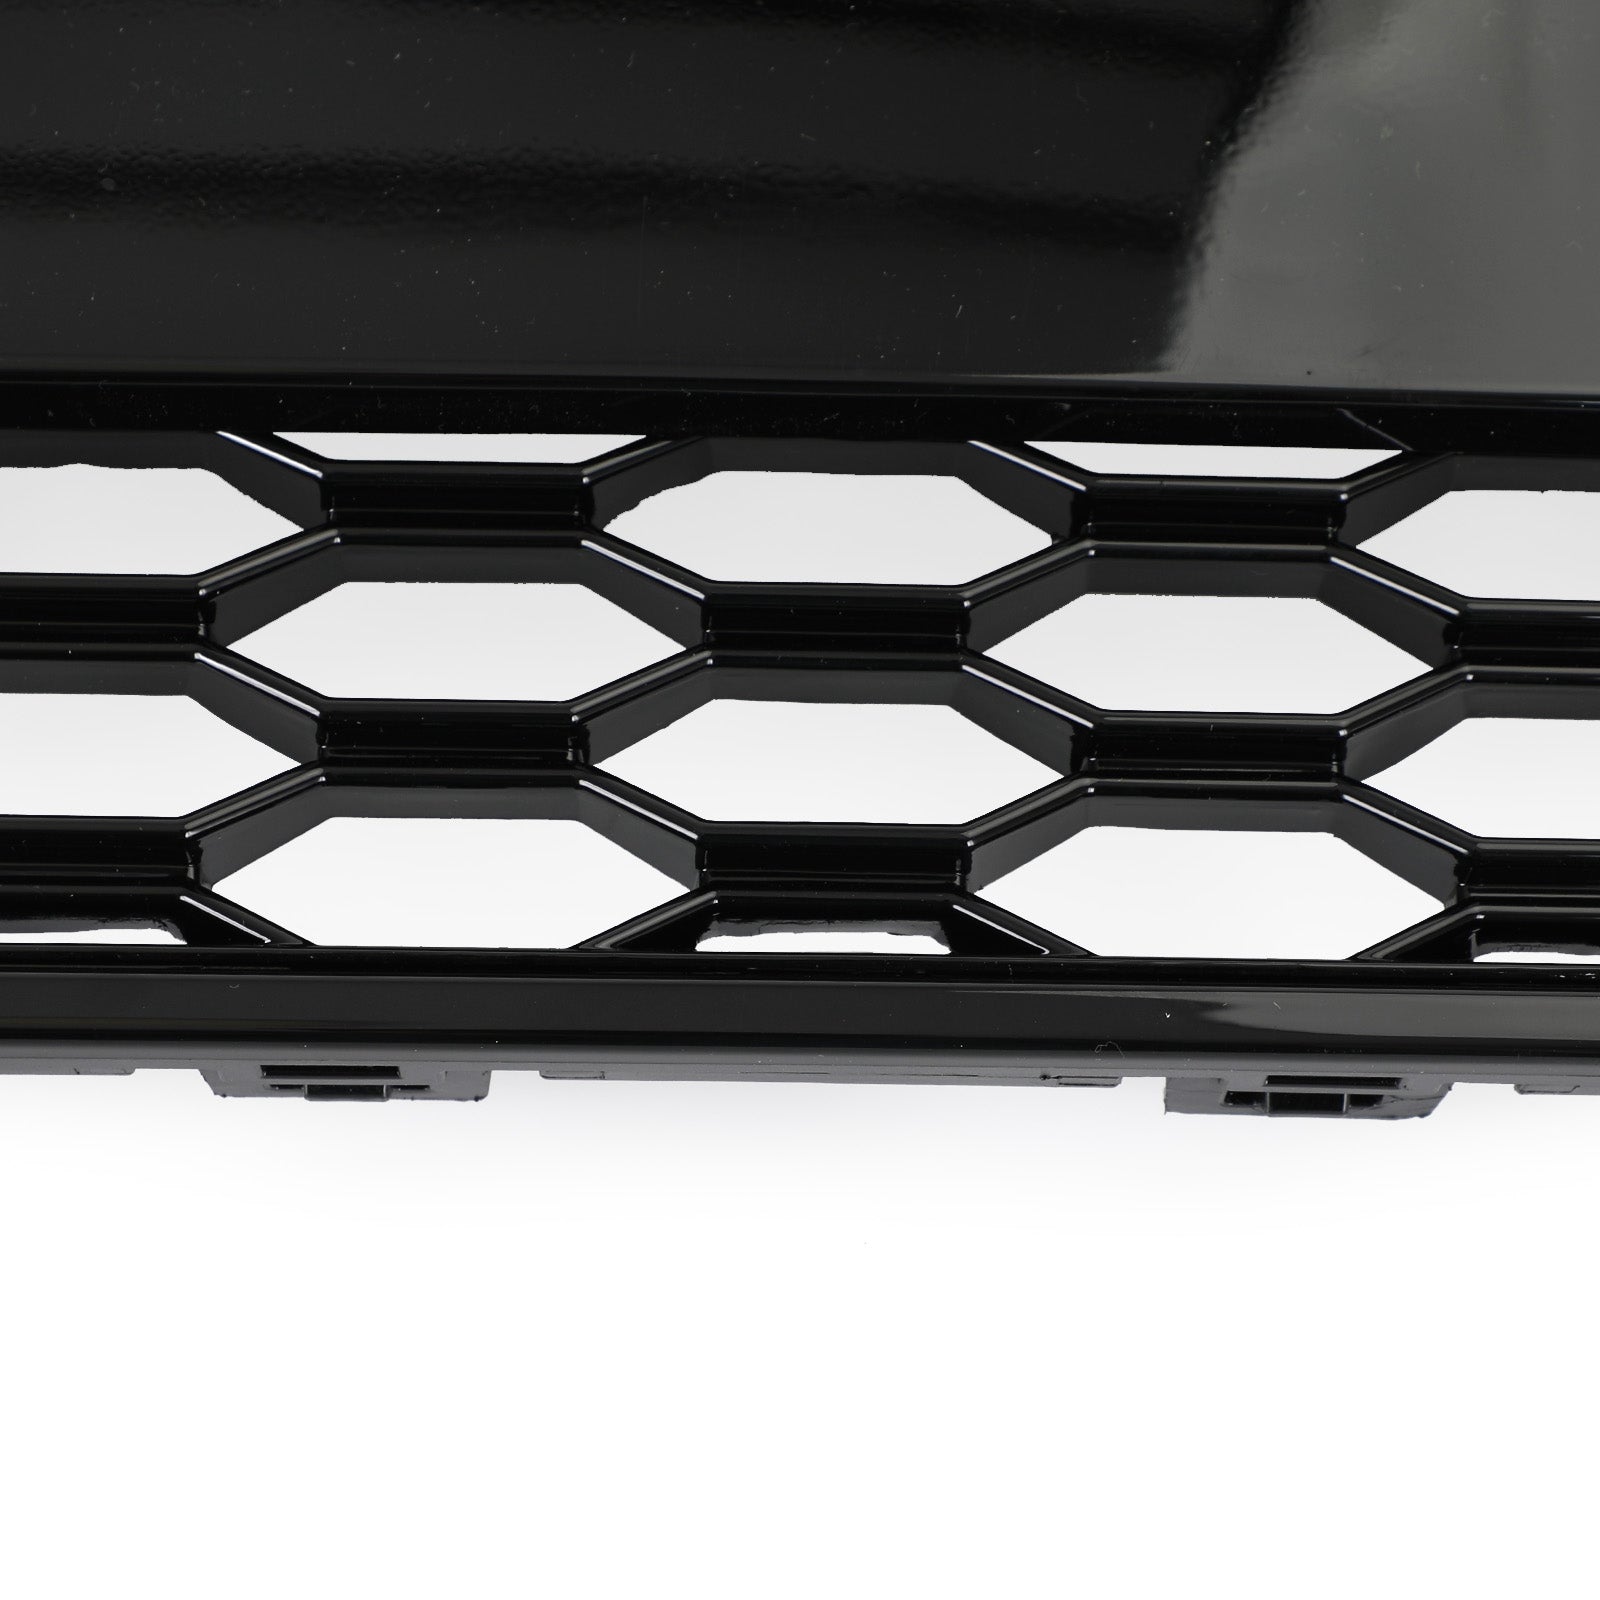 Griglia a griglia esagonale in rete sportiva a nido d'ape stile RS7 adatta per Audi A7/S7 2012-2015 nera